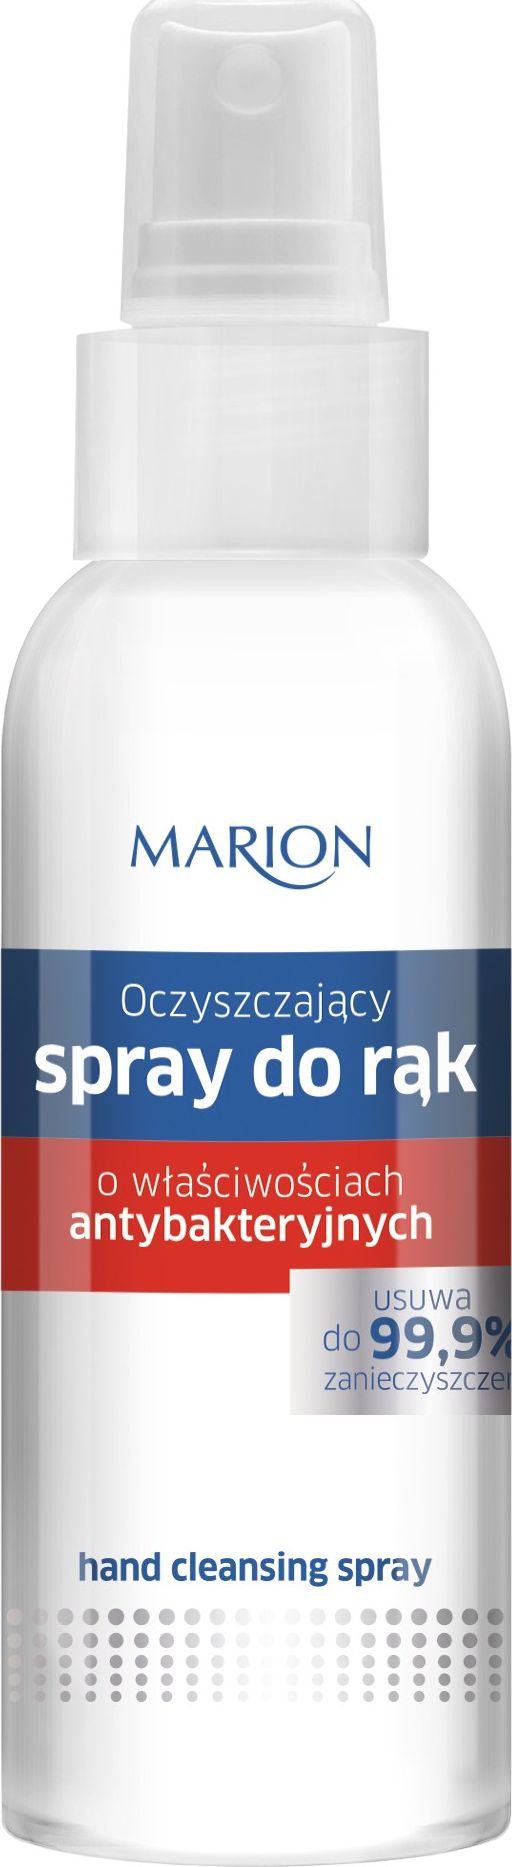 Marion Spray do rak antybakteryjny 120ml 781962